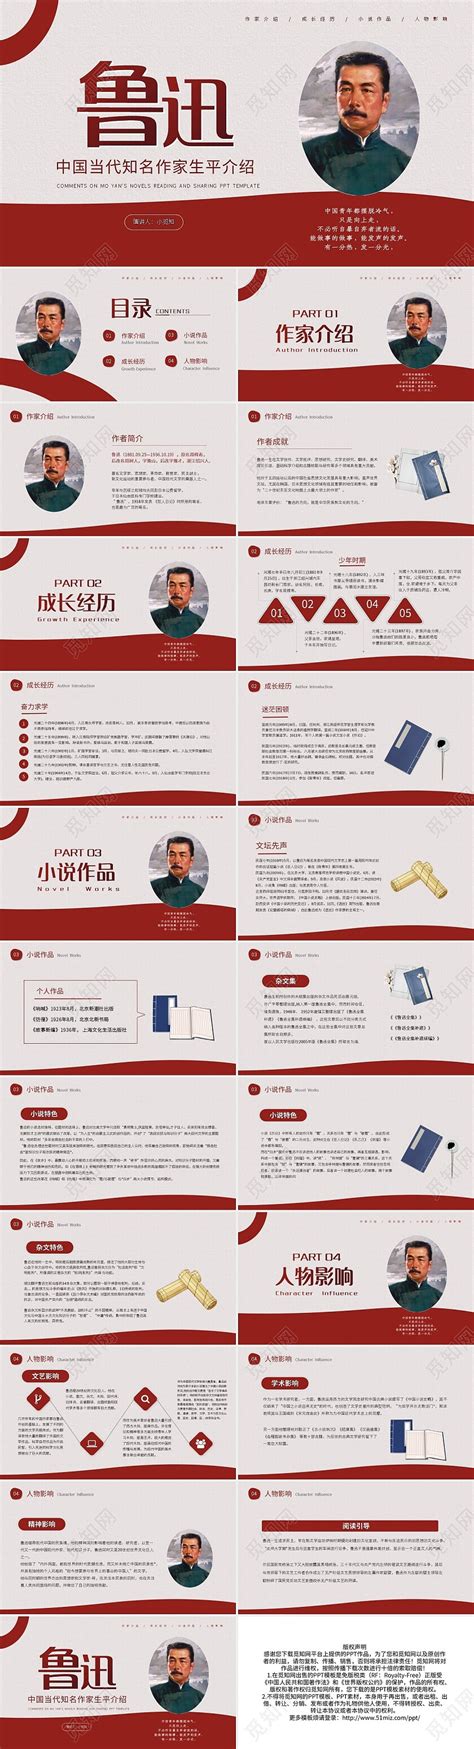 红色动态简约鲁迅中国当代知名作家生平介绍宣传PPT模板下载 - 觅知网